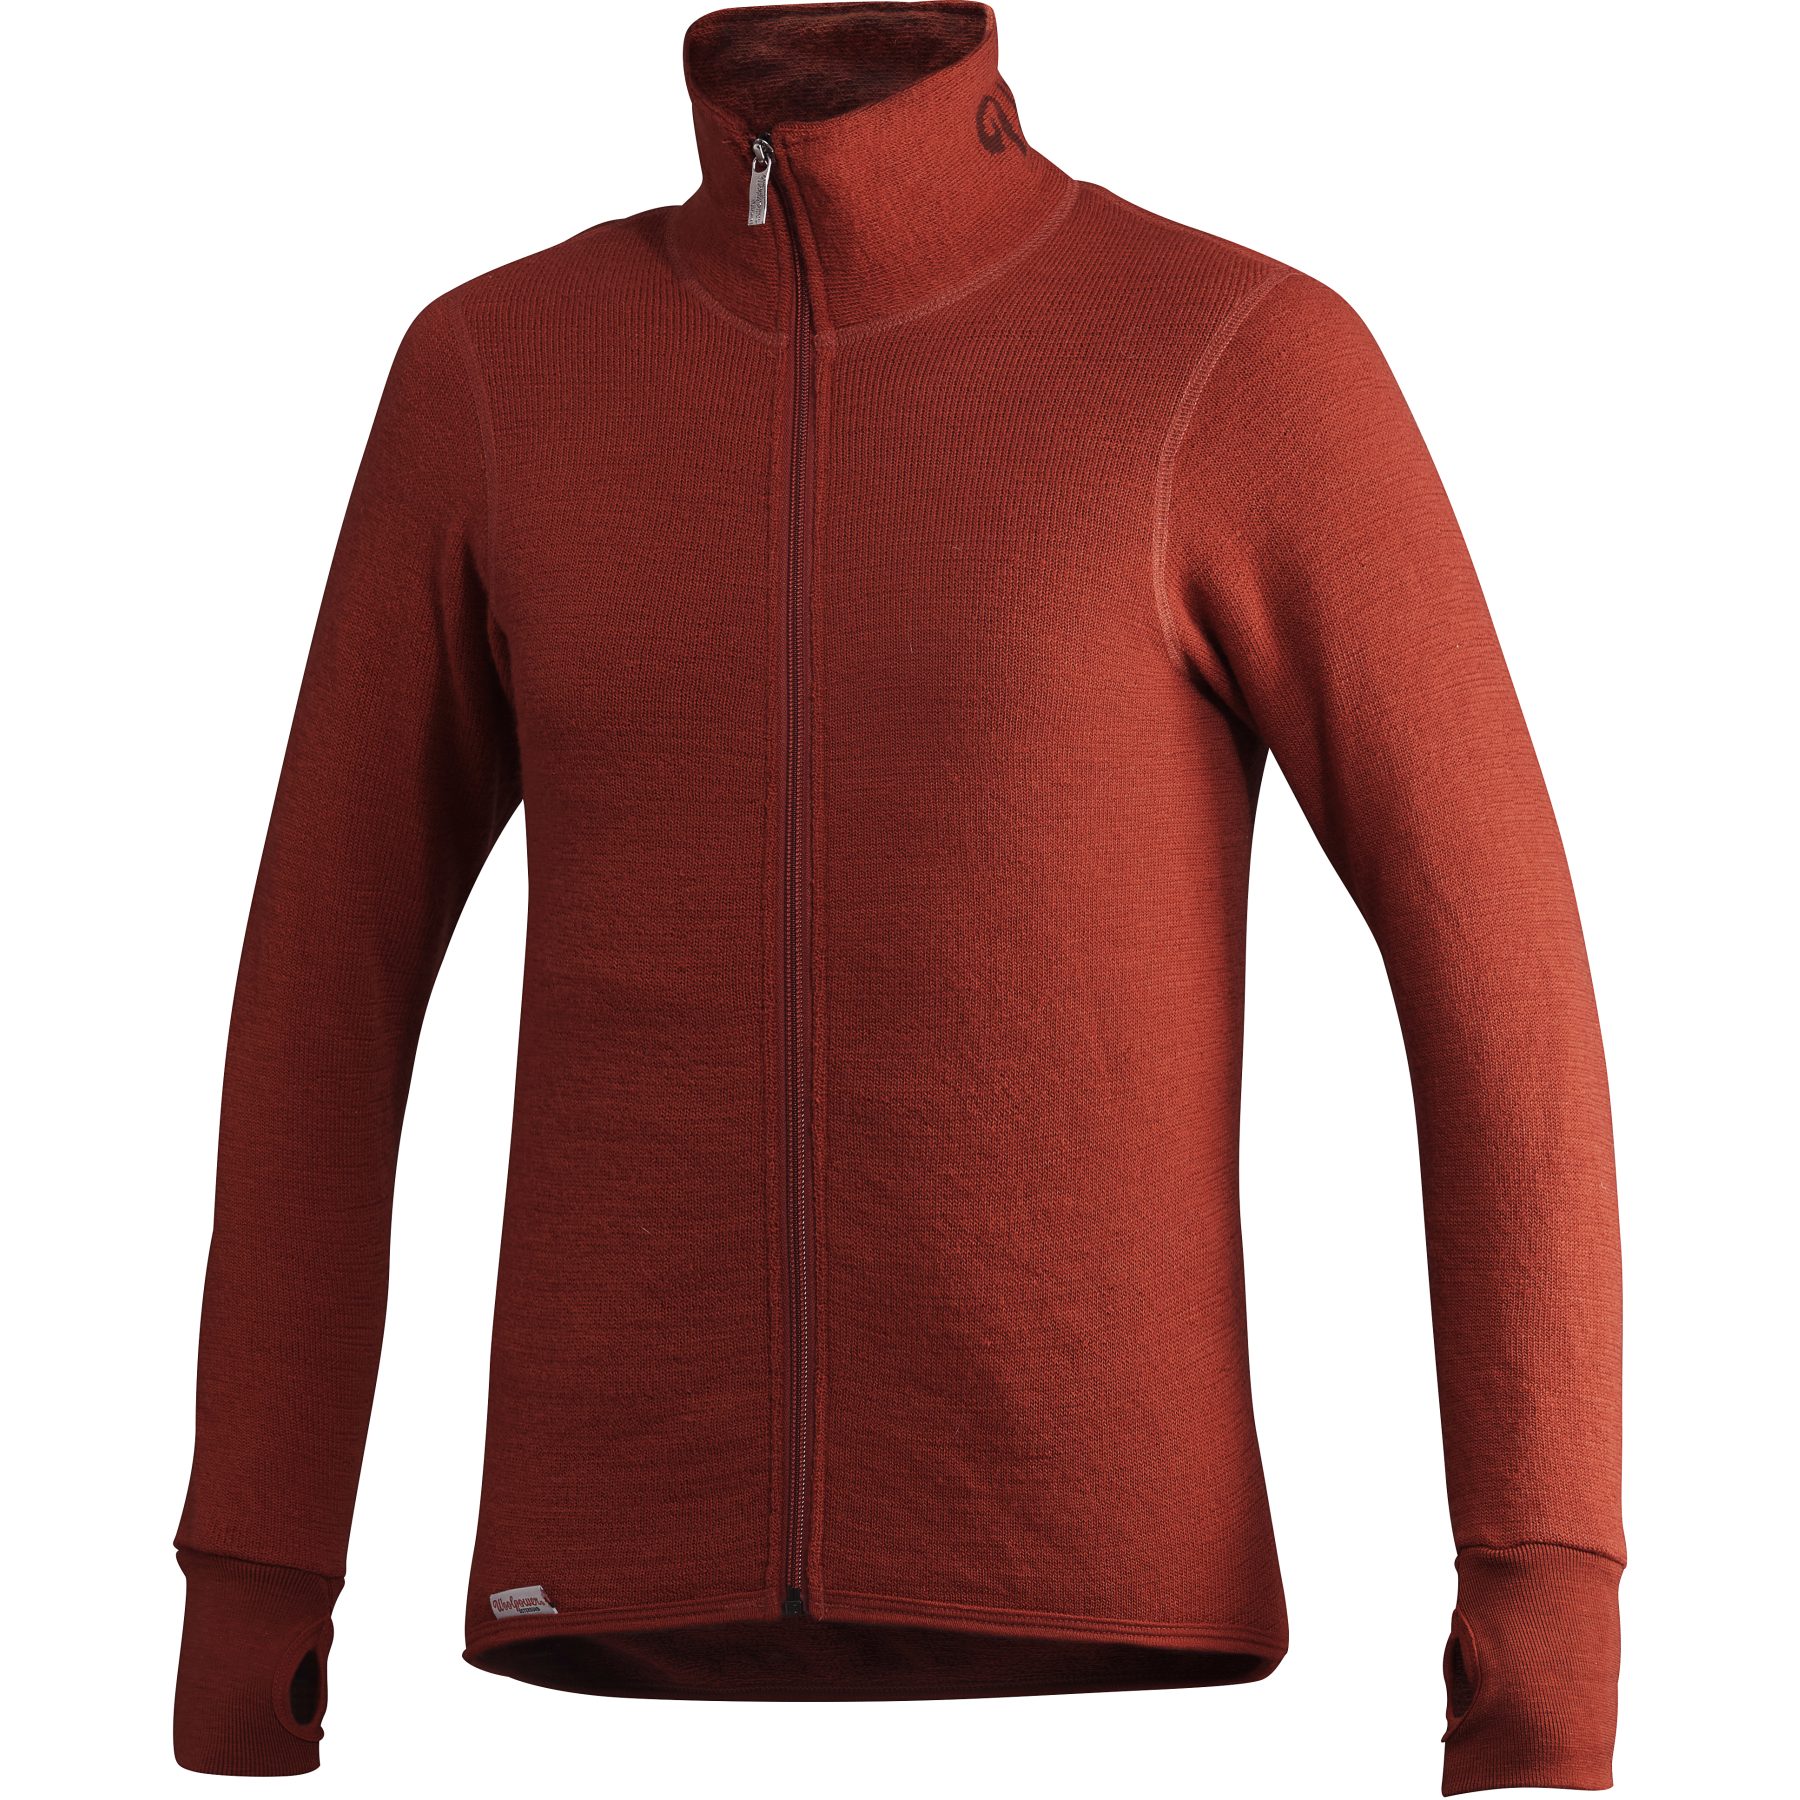 Productfoto van Woolpower Full Zip Jacket 400 - autumn red